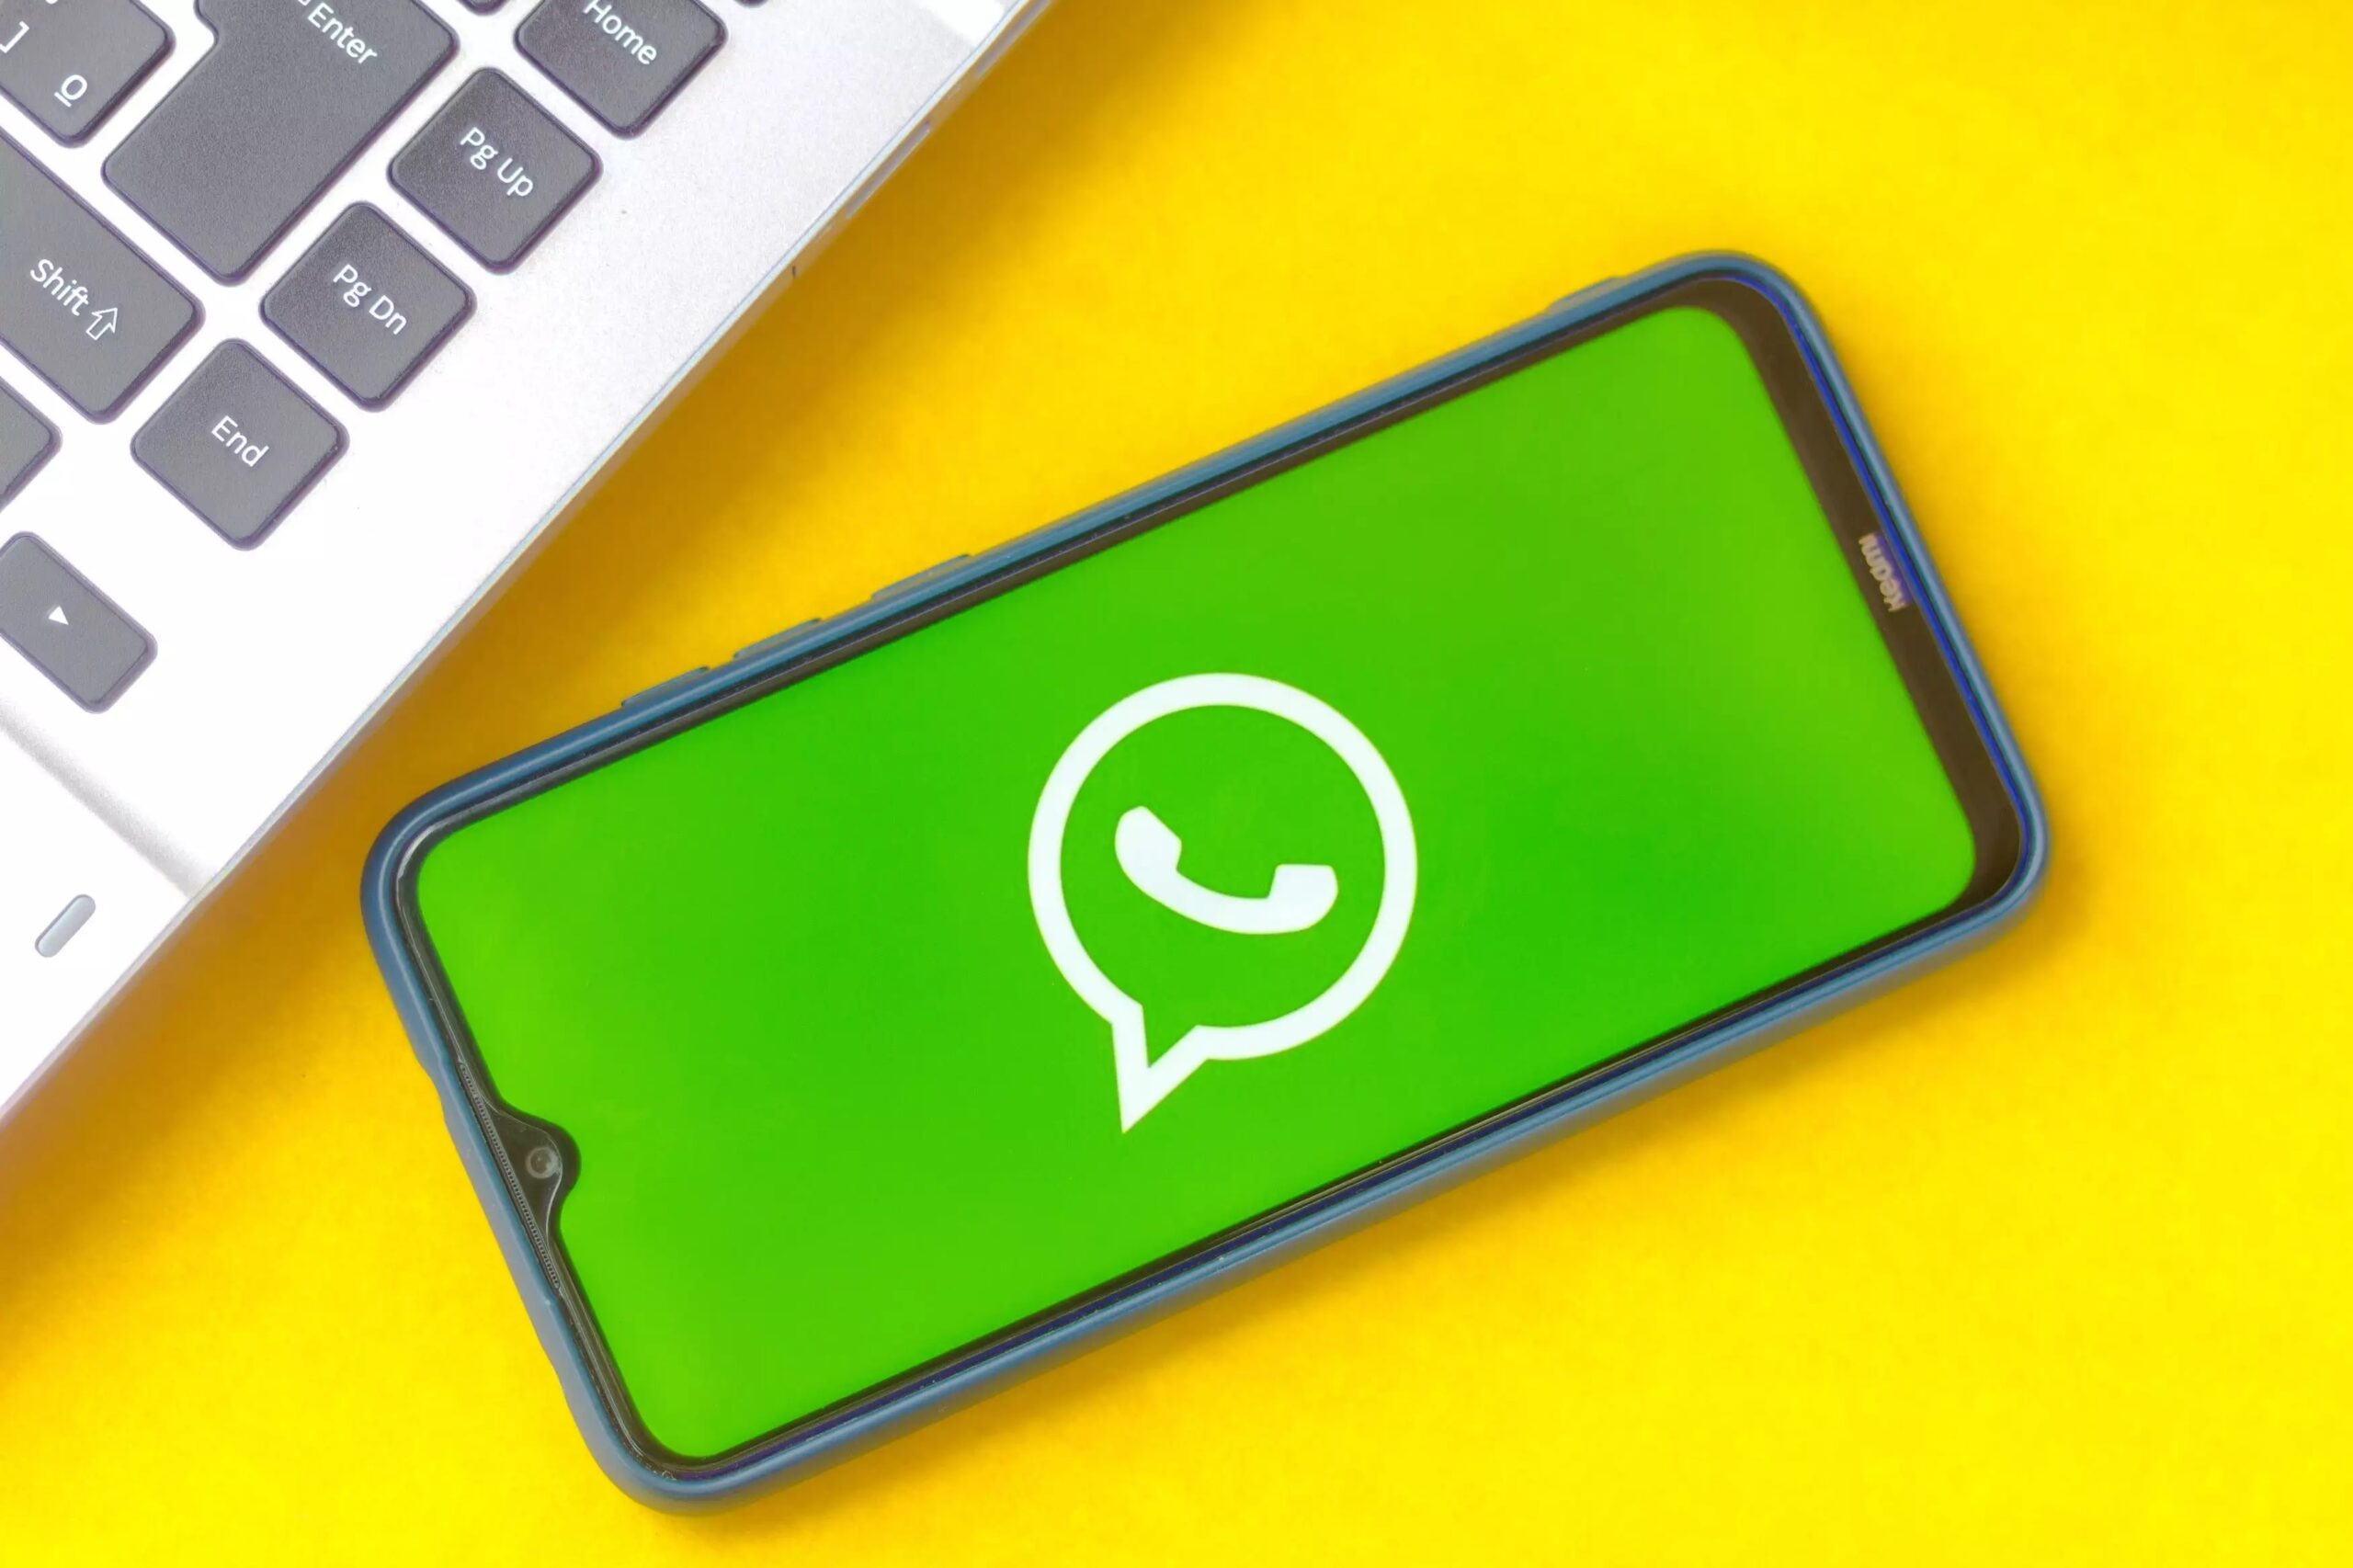 WhatsApp Mesaja Emoji Koyma, Beğenme Nasıl Yapılır? (2022)